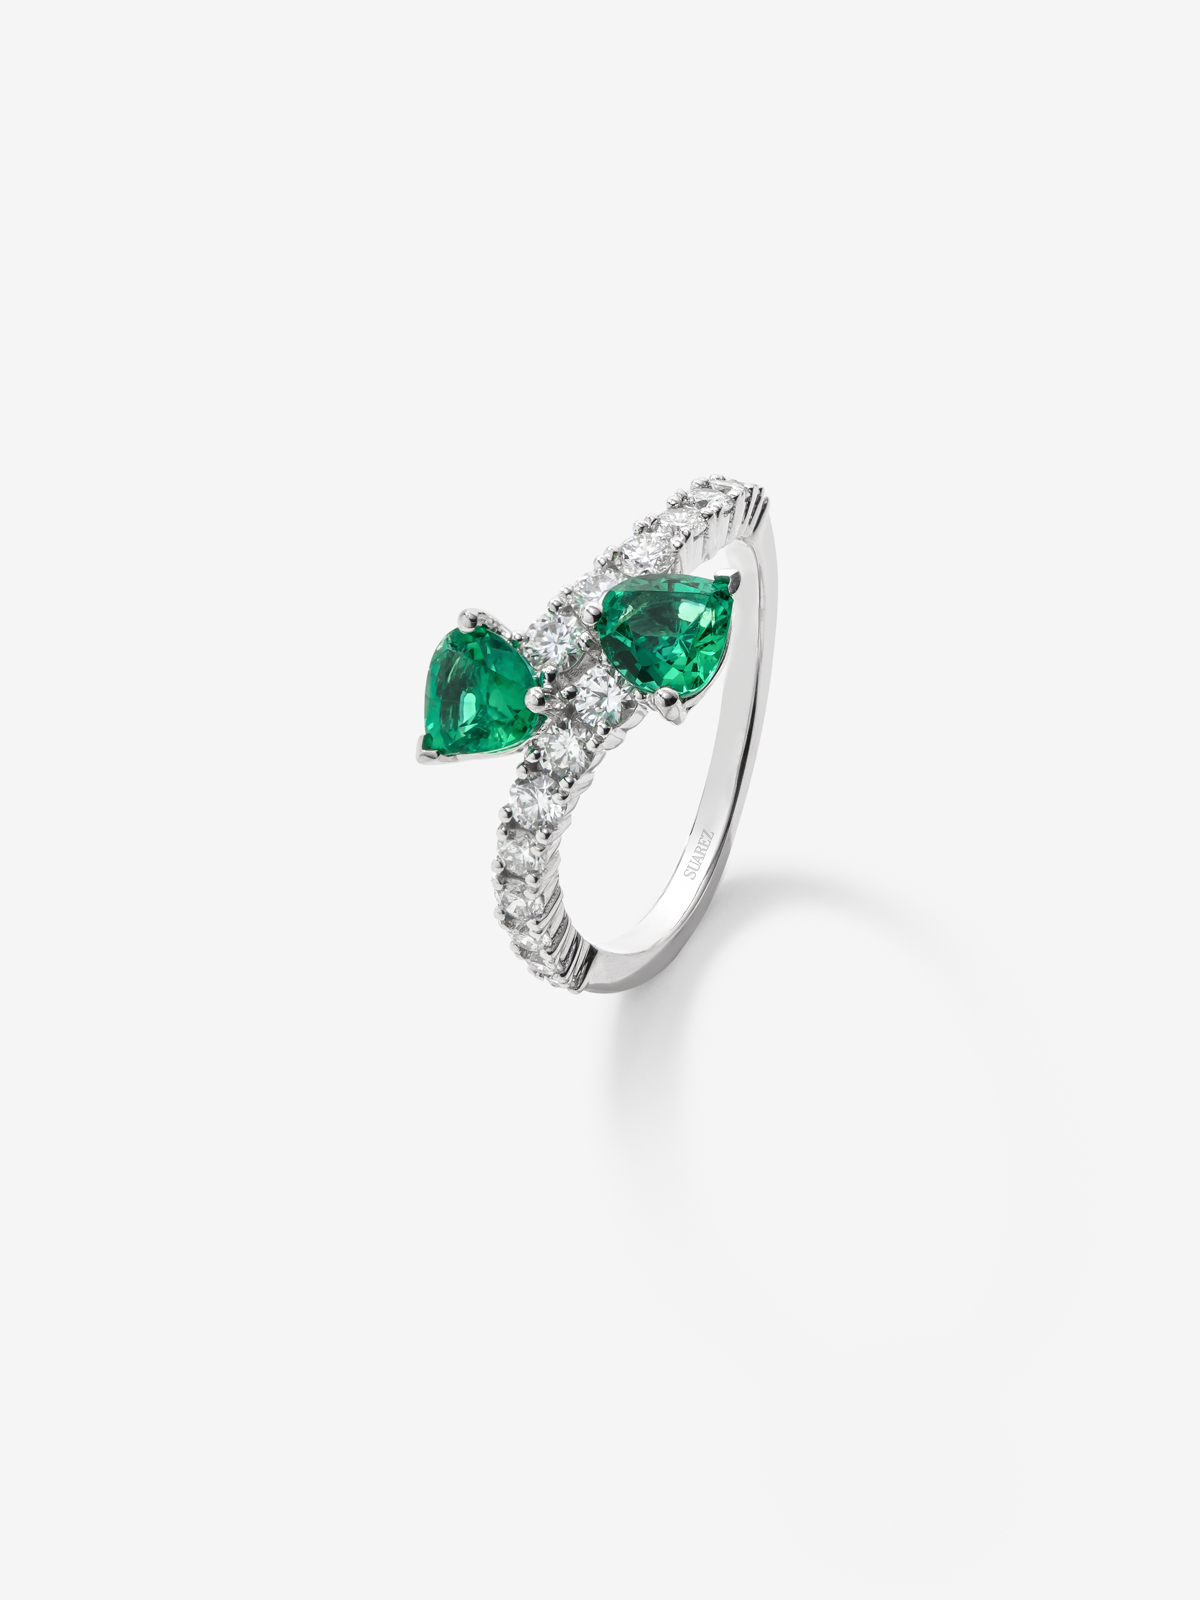 Anillo tú y yo de oro blanco de 18K con esmeraldas verdes en talla corazón de 0,98 cts y diamantes blancos en talla brillante de 0,6 cts